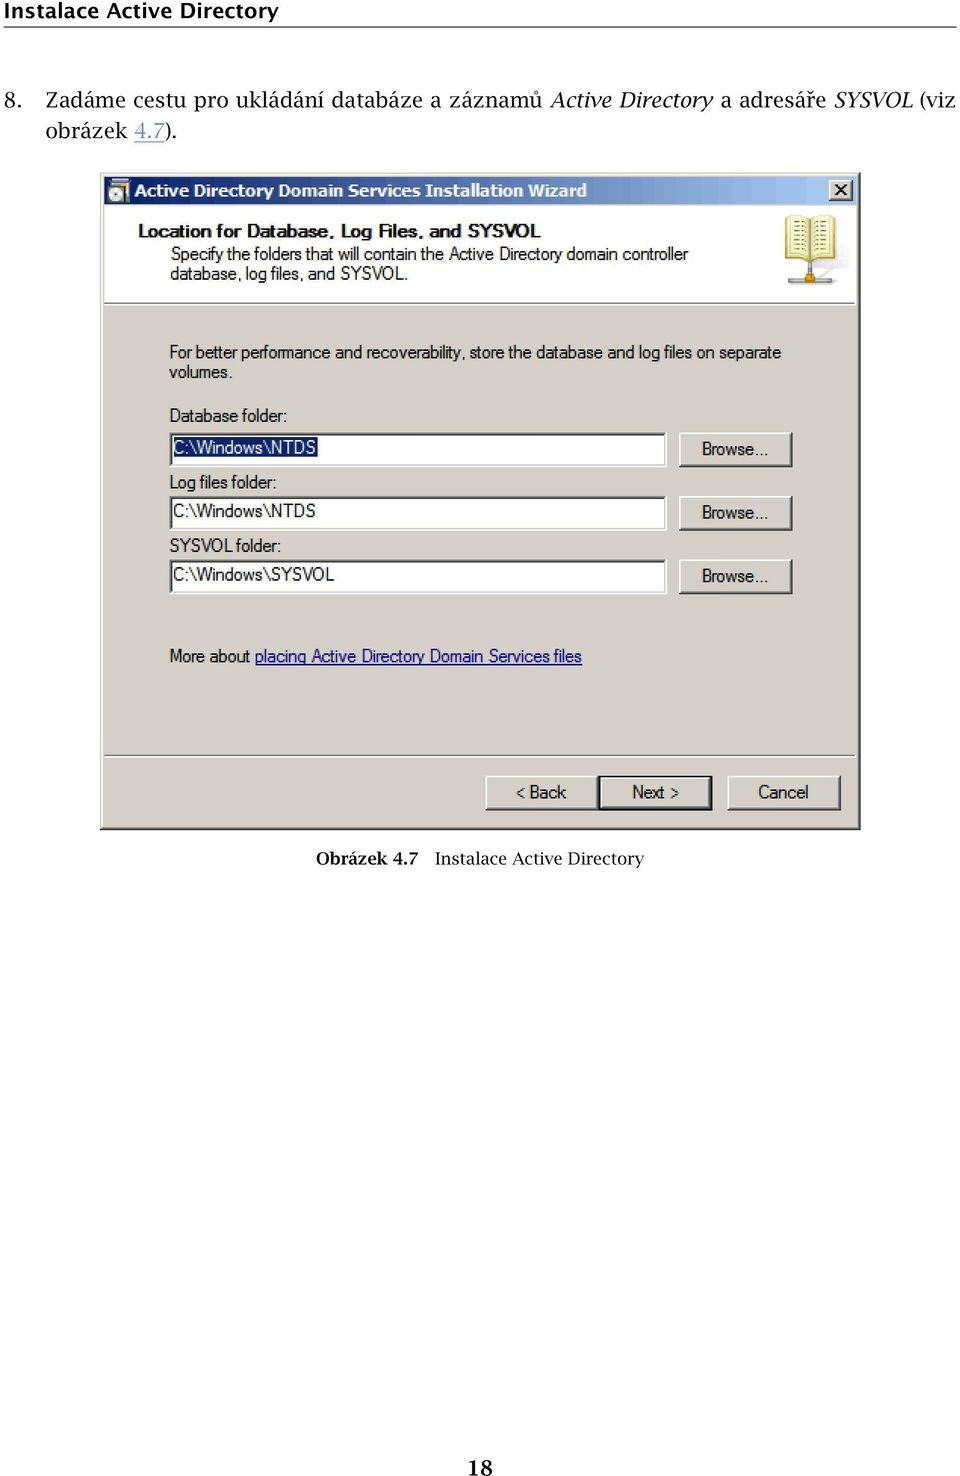 záznamů Active Directory a adresáře SYSVOL